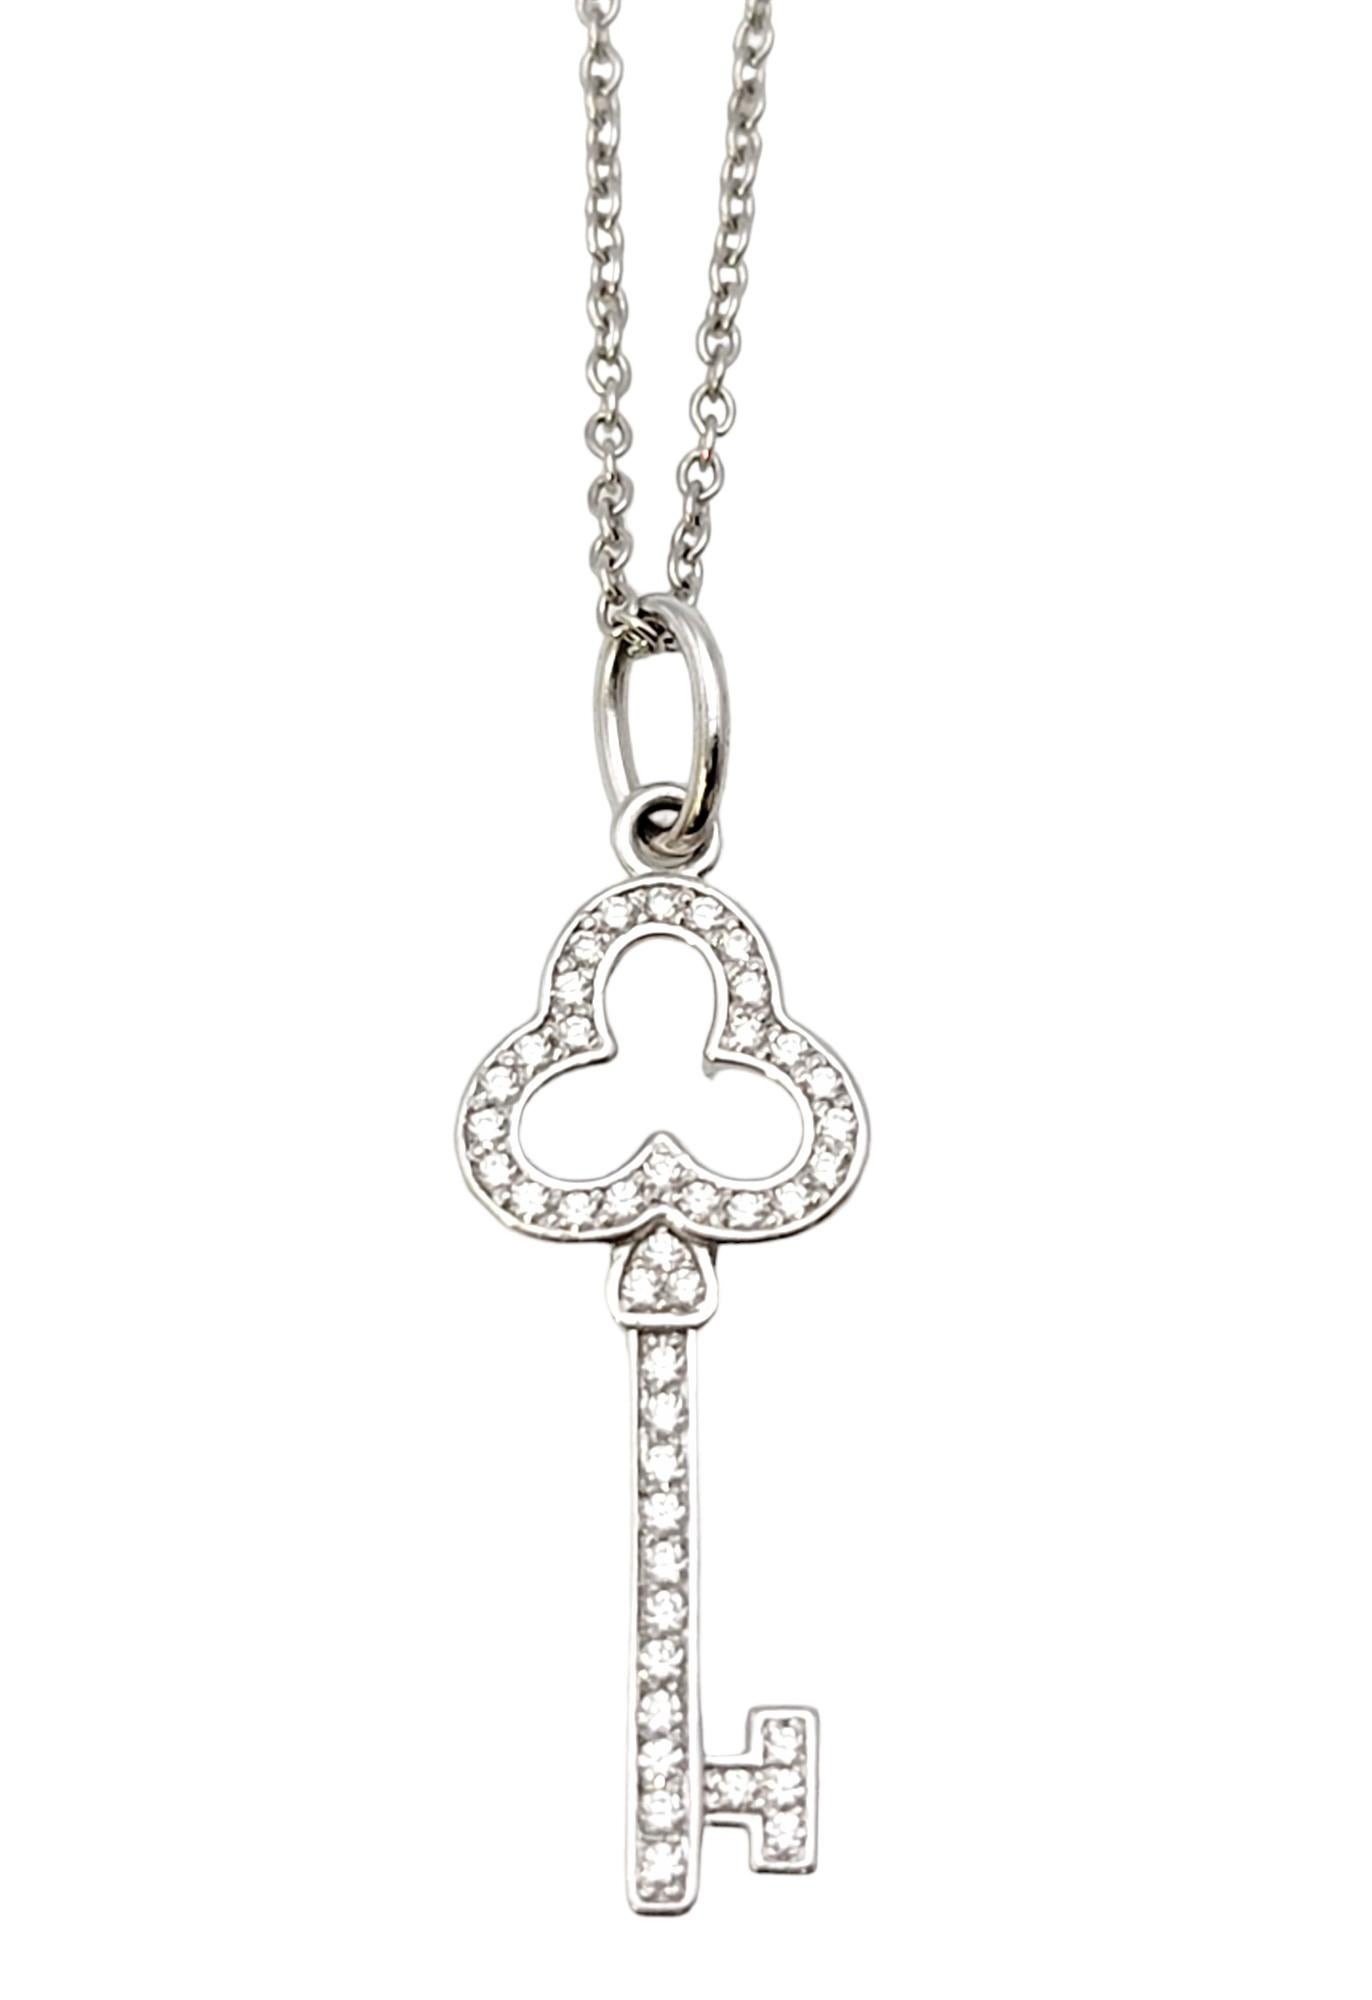 Ce collier pendentif chic de Tiffany & Co. est l'incarnation de l'élégance discrète. Fondée en 1837 à New York, Tiffany & Co. est l'une des maisons de design de luxe les plus célèbres au monde, reconnue dans le monde entier pour son design de bijoux